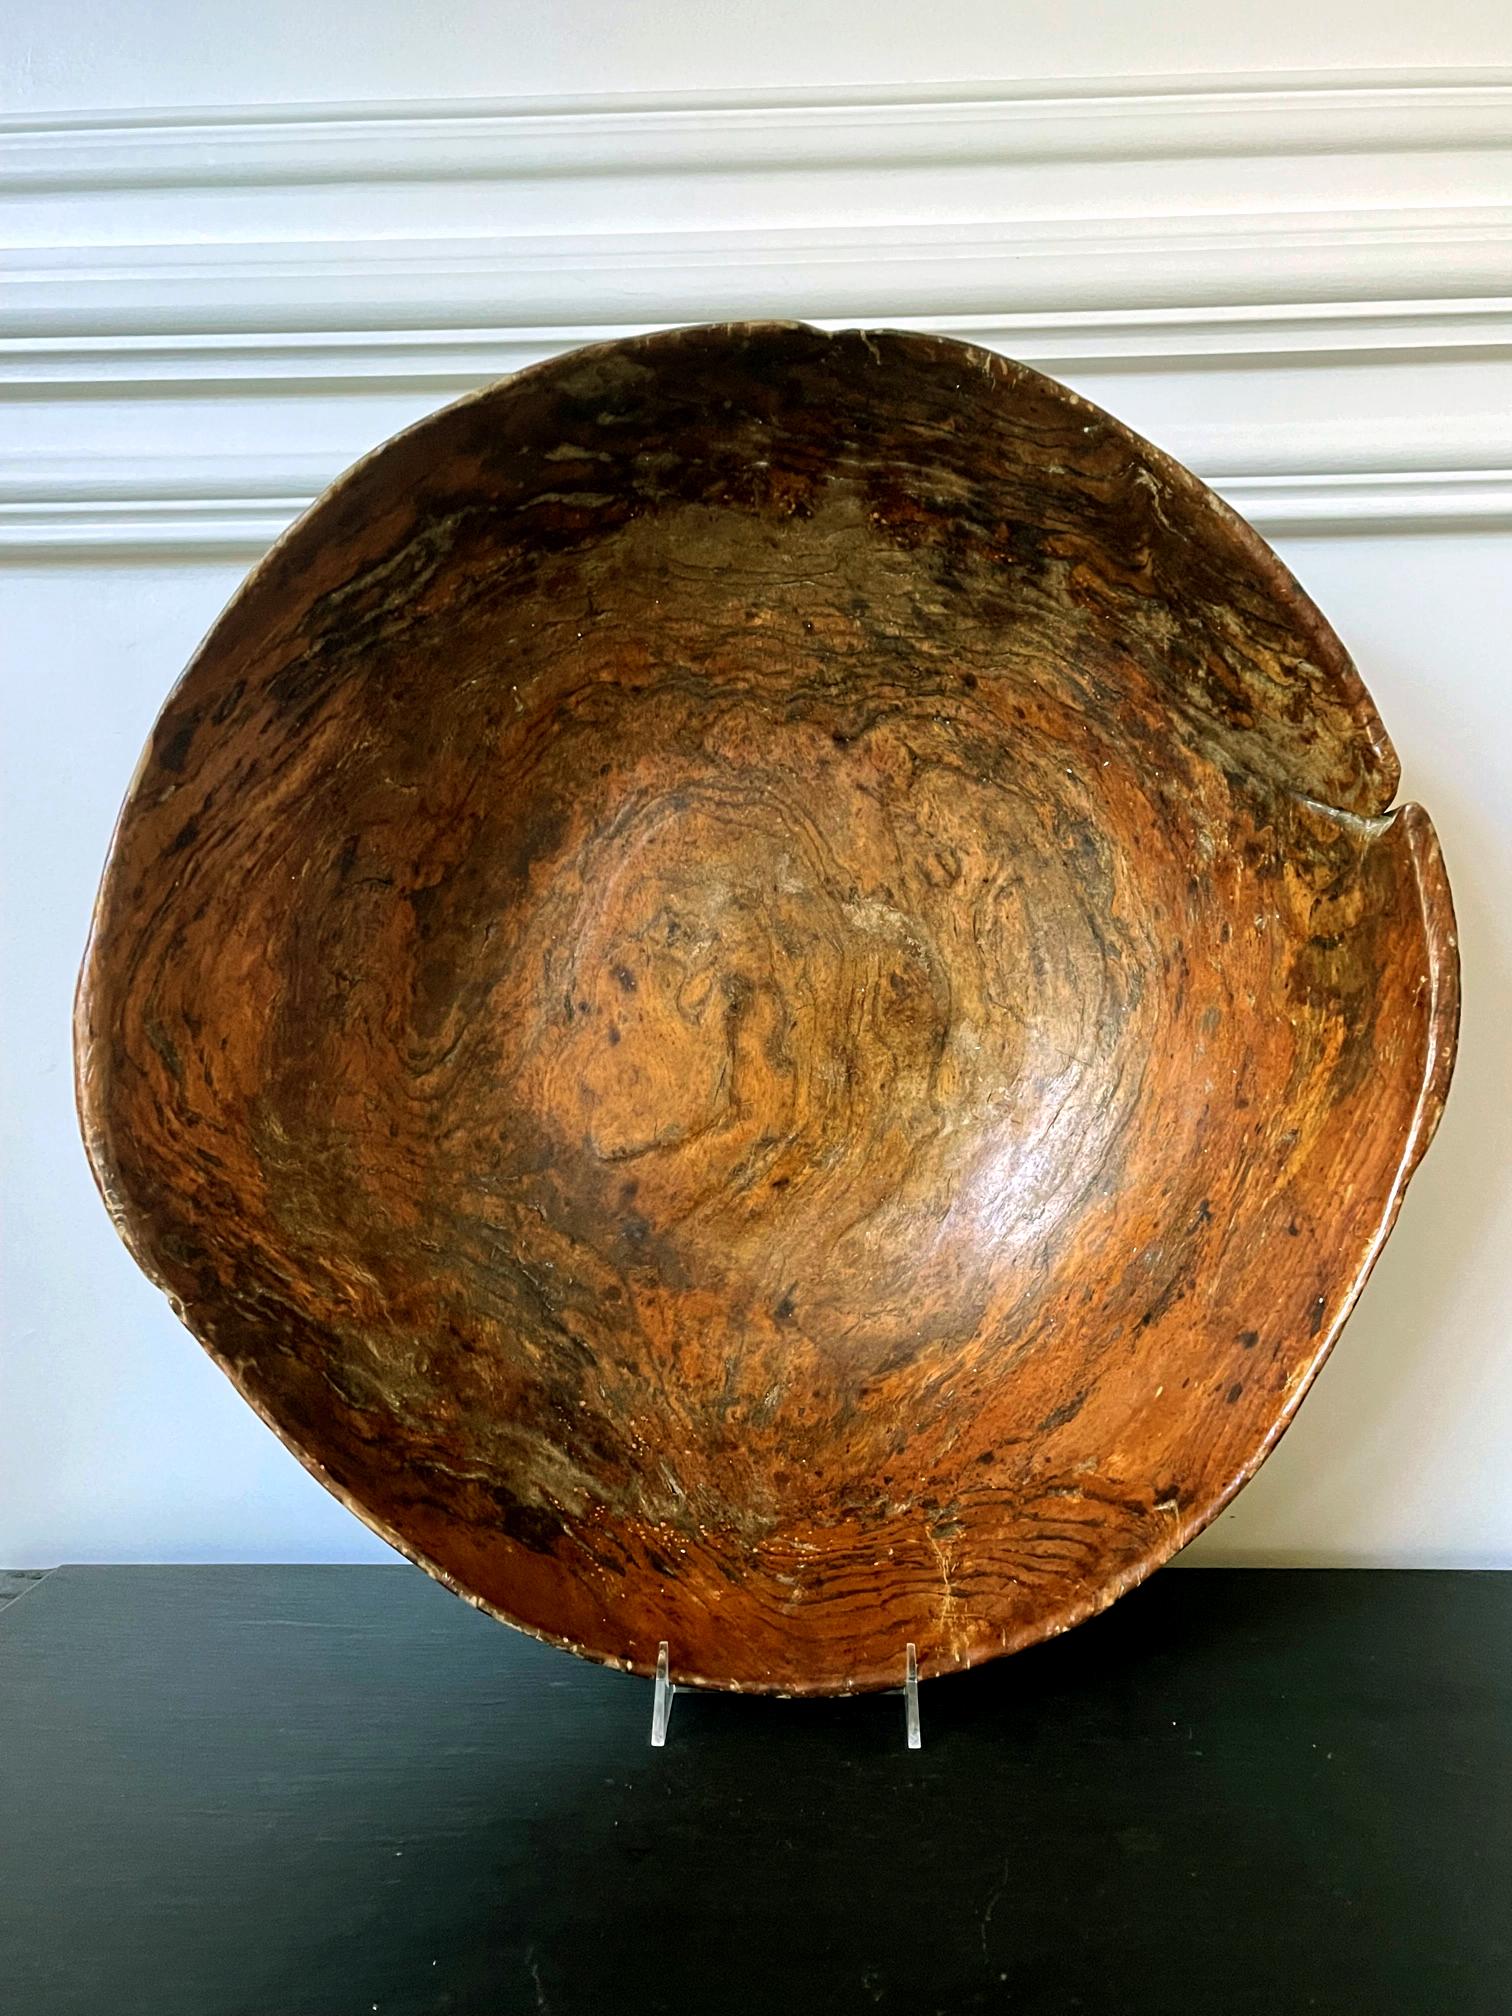 Un bol américain massif sculpté à la main dans du bois d'orme (avec peut-être des motifs de ronce dans le bois) vers le 18e siècle. Le bol provient de la partie nord-est ou des Eastern Woodlands des États-Unis et a peut-être été fabriqué par des